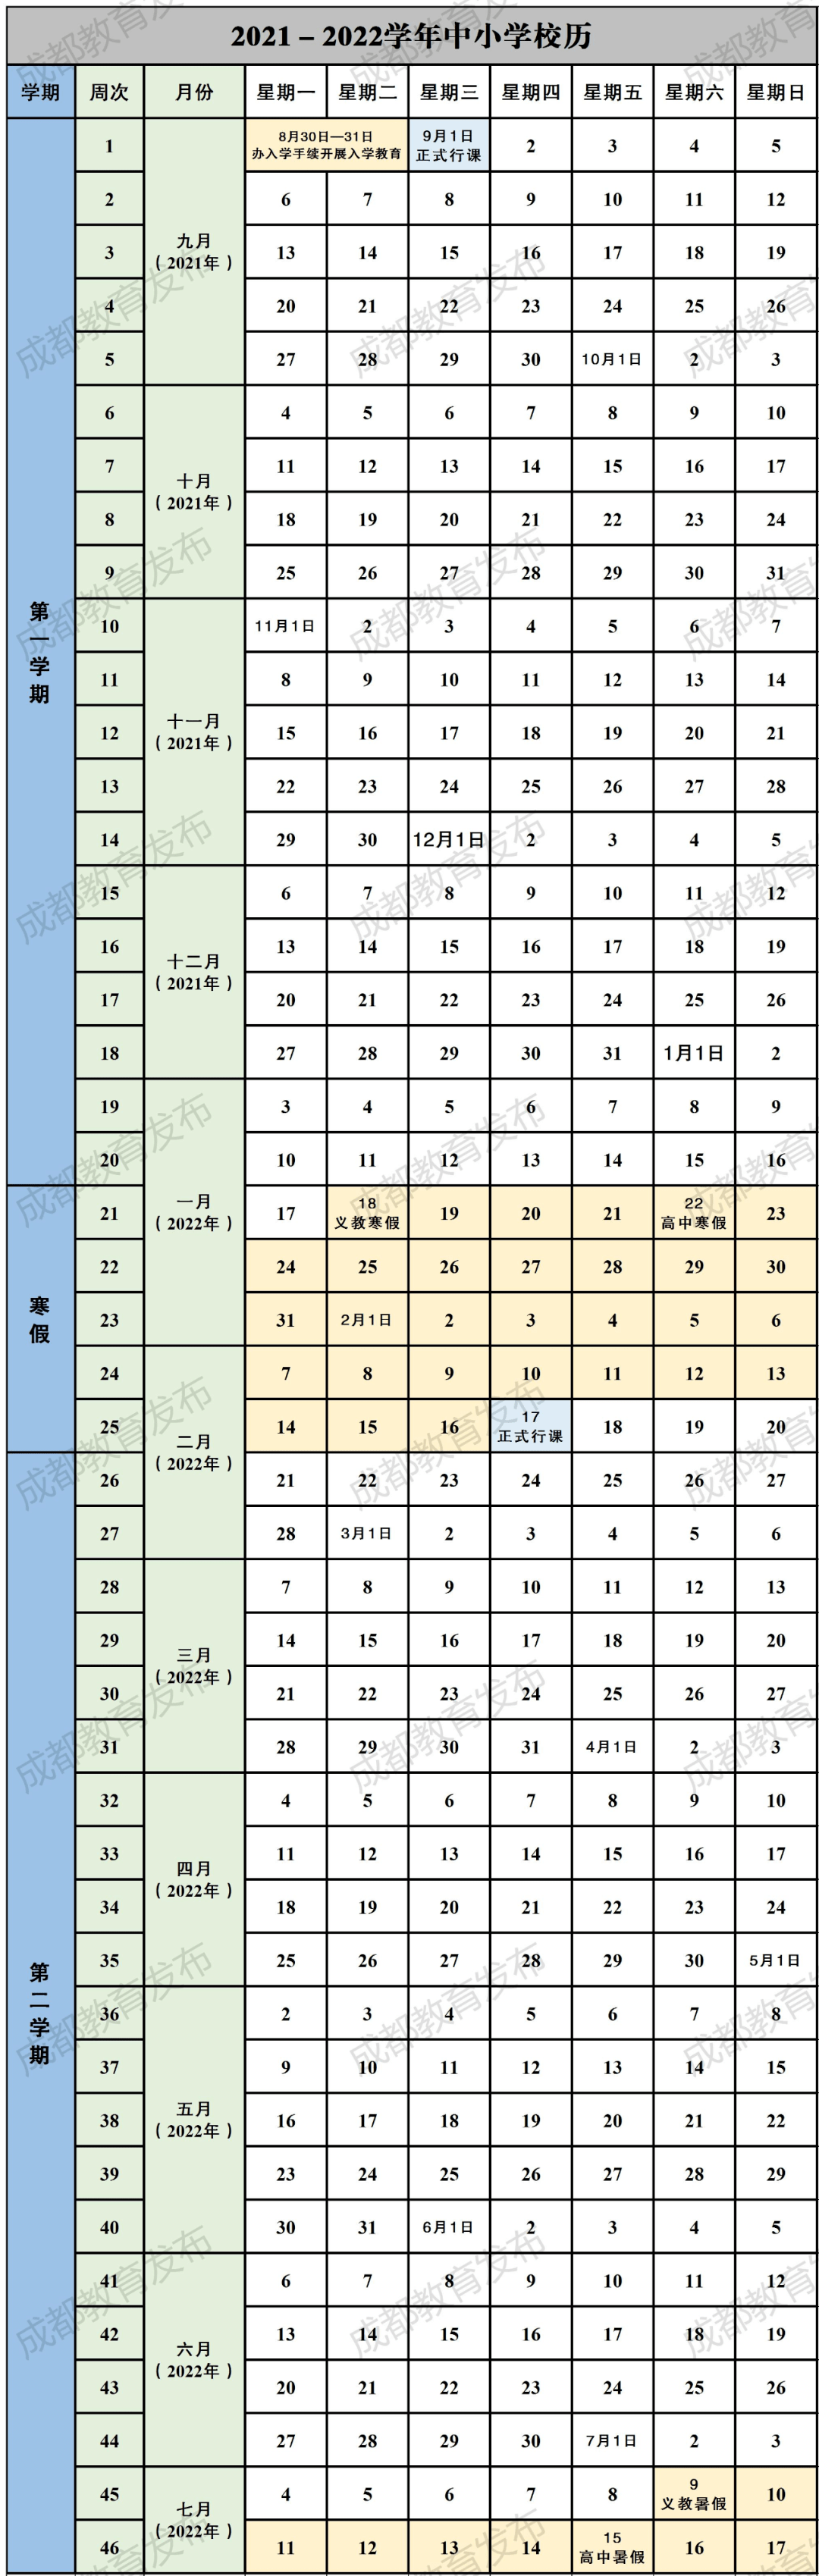 2021-2022成都中小学校历 寒暑假时间公布